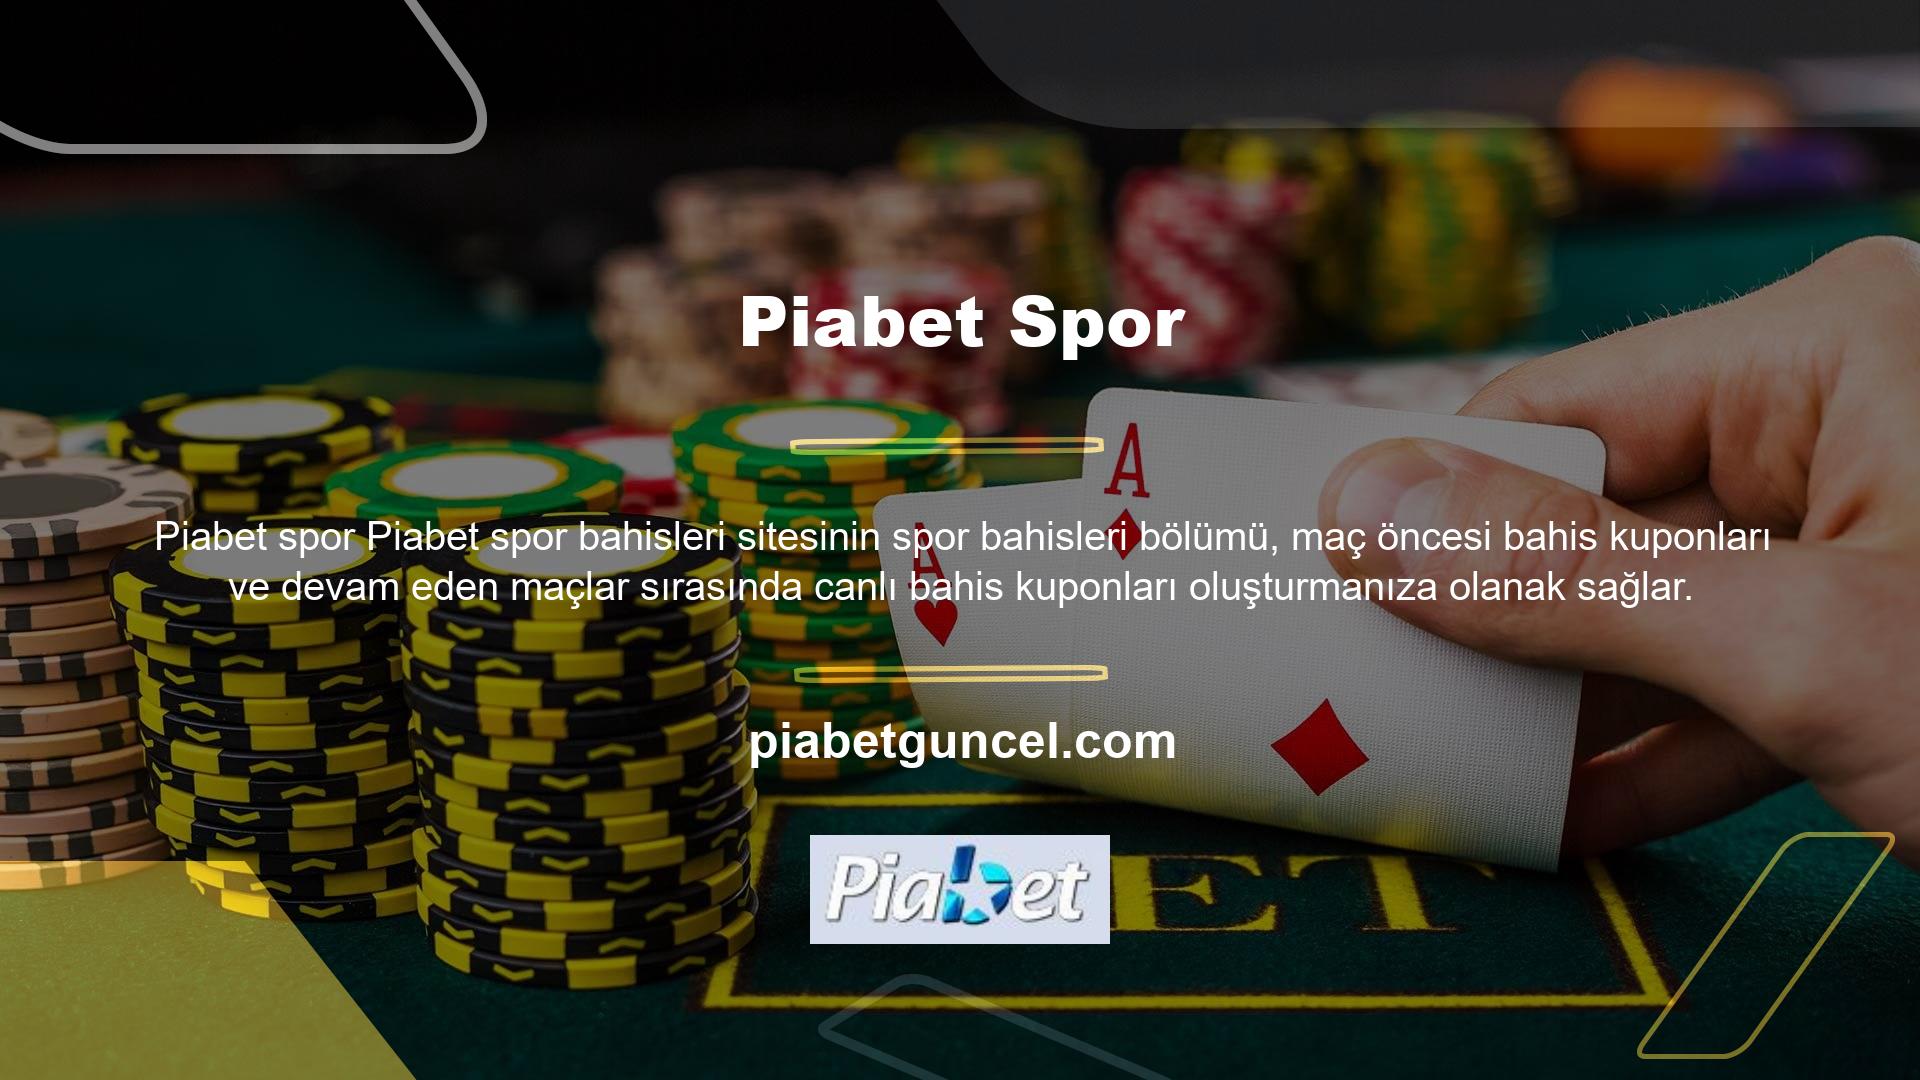 Piabet online canlı bahis sitesi, oyunculara diğer bahis sitelerine göre daha yüksek oranlar ve daha kapsamlı bahis seçenekleri sunan Piabet bahis özelliği ile canlı bahis altyapısına sahiptir